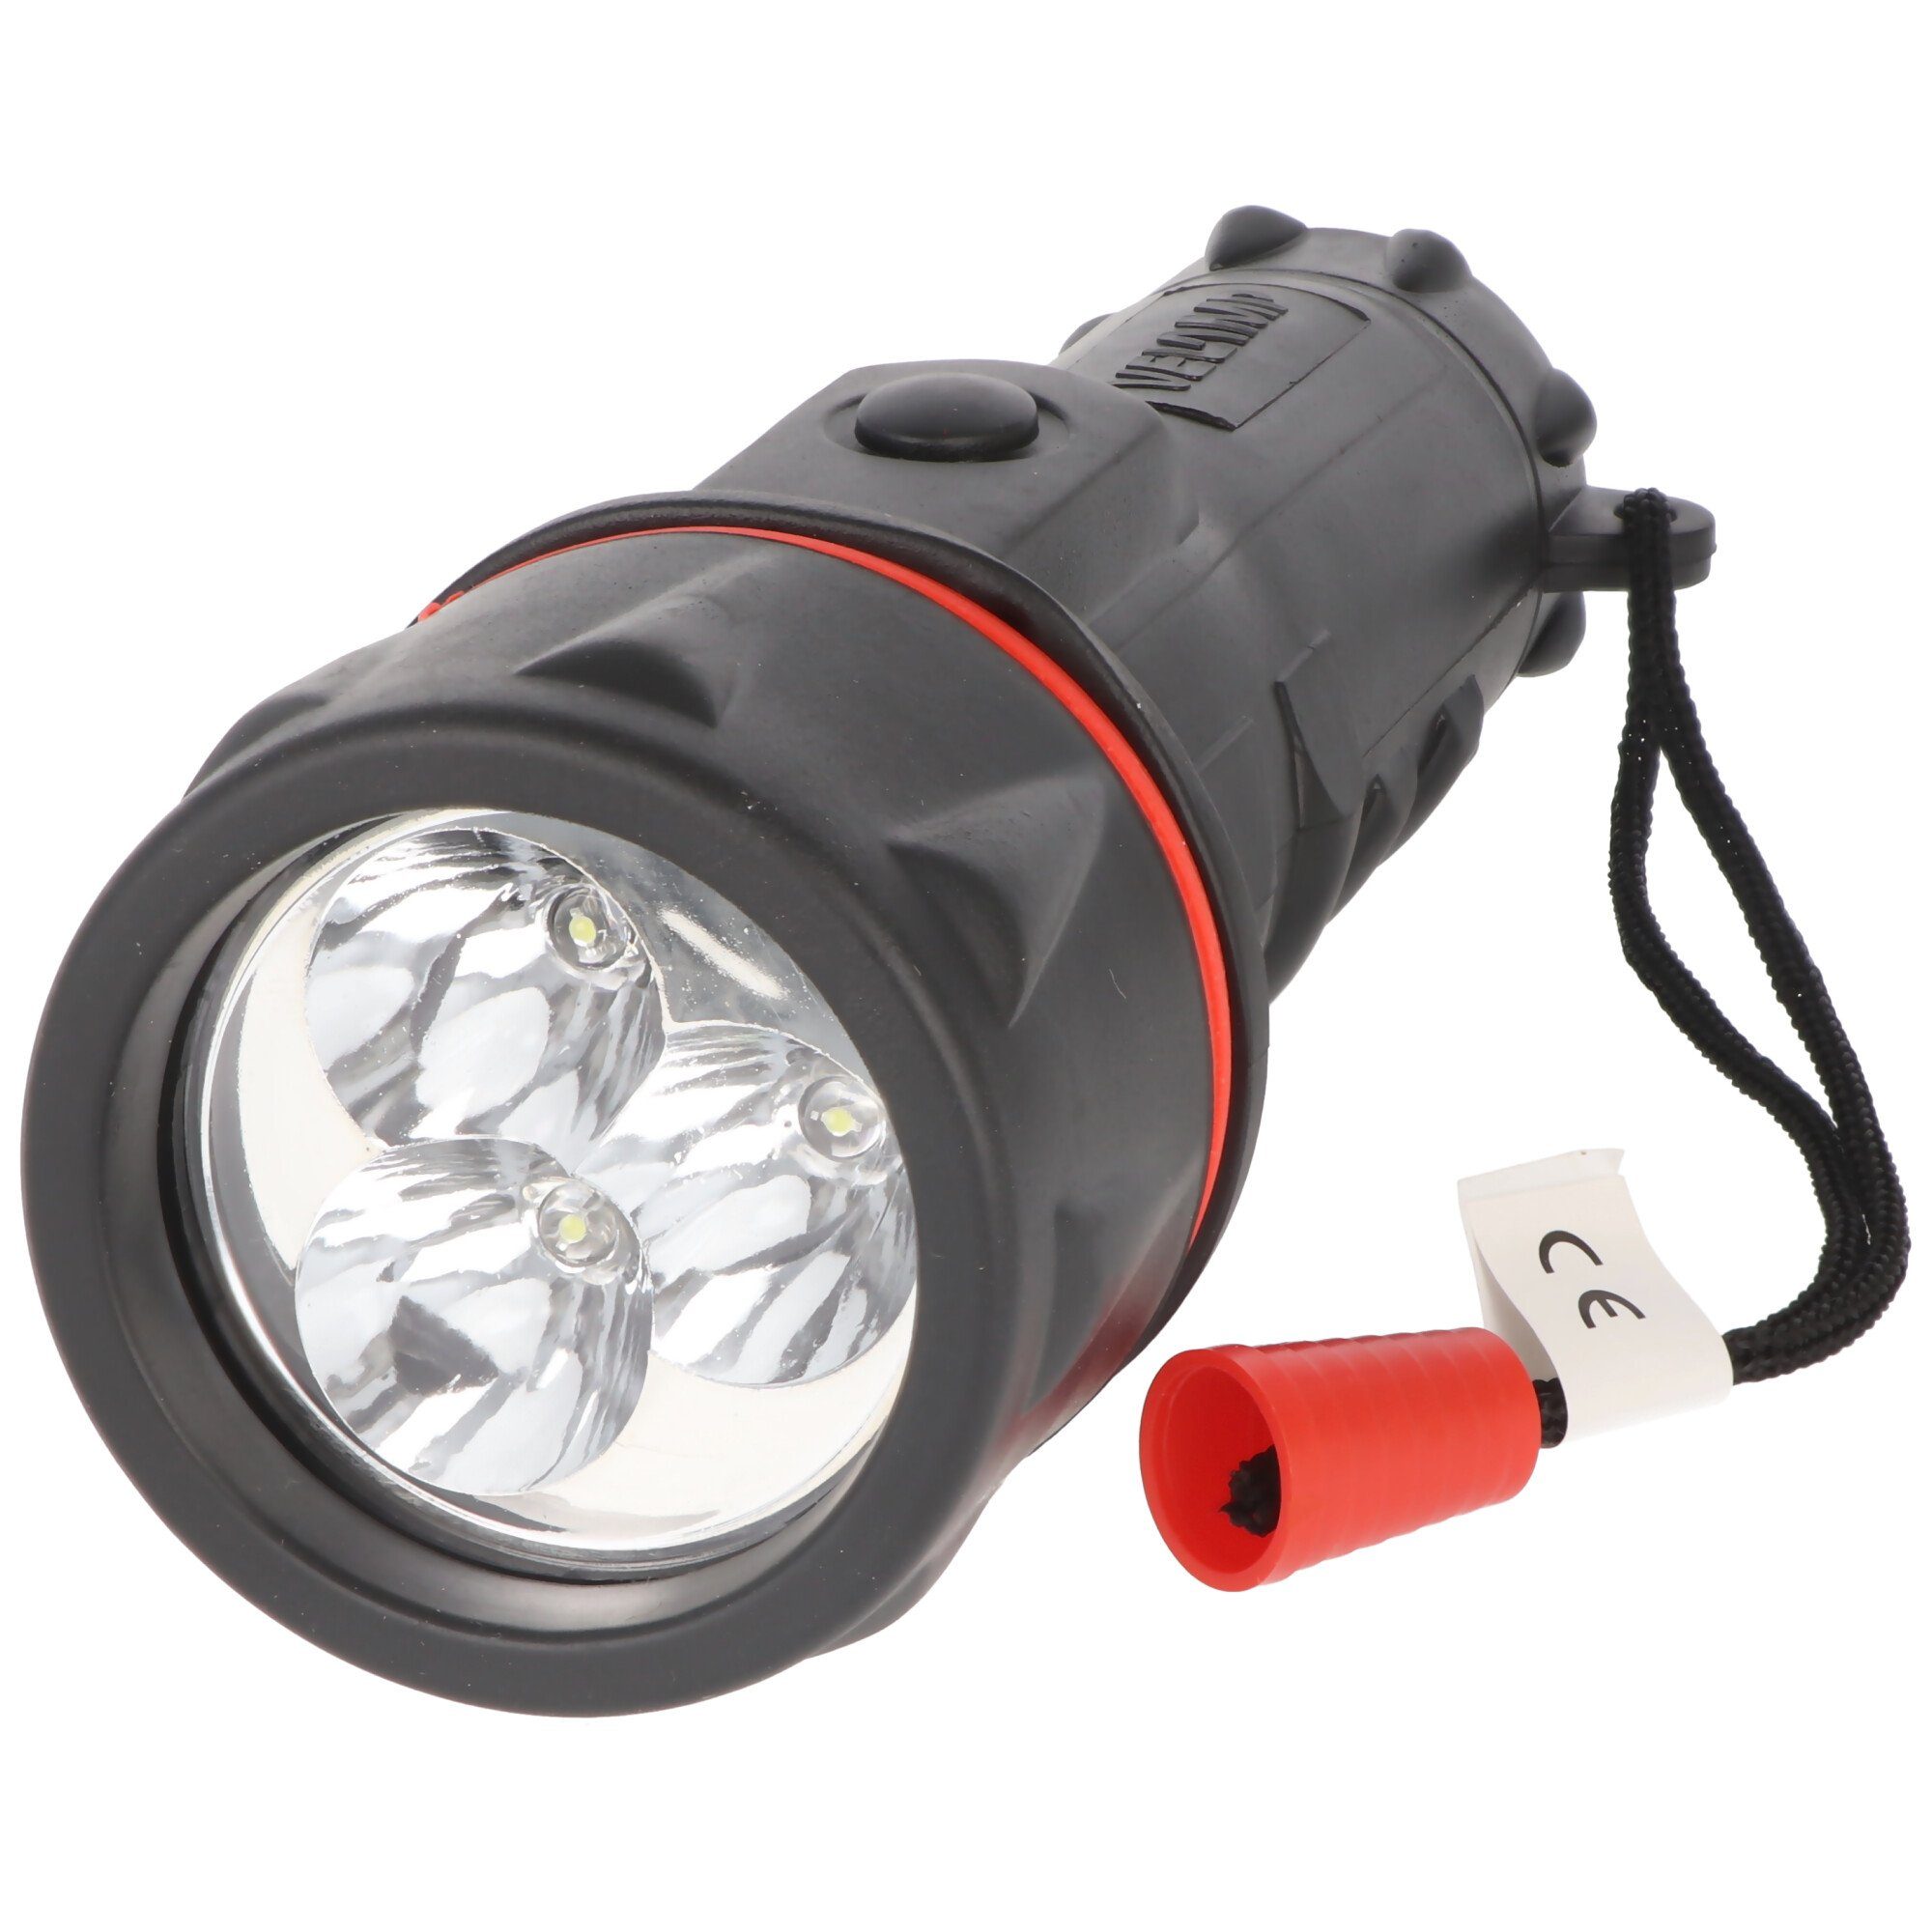 Velamp LED Taschenlampe LED mit Velamp Handschlaufe LEDs, 3 Gummi-Taschenlampe, wasserdicht